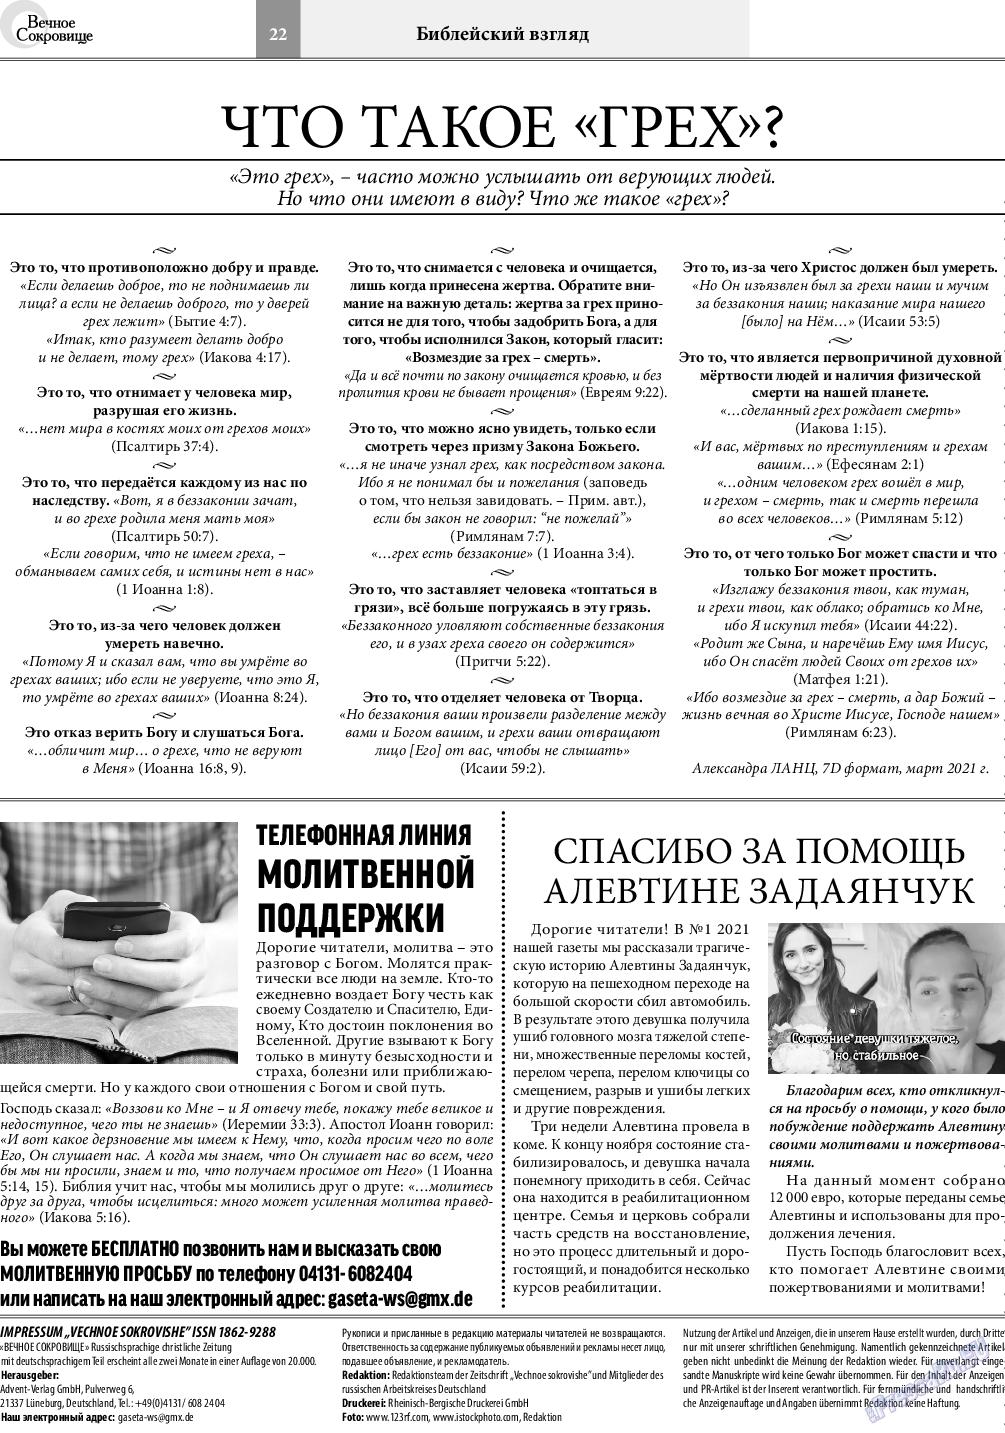 Вечное сокровище, газета. 2021 №3 стр.22